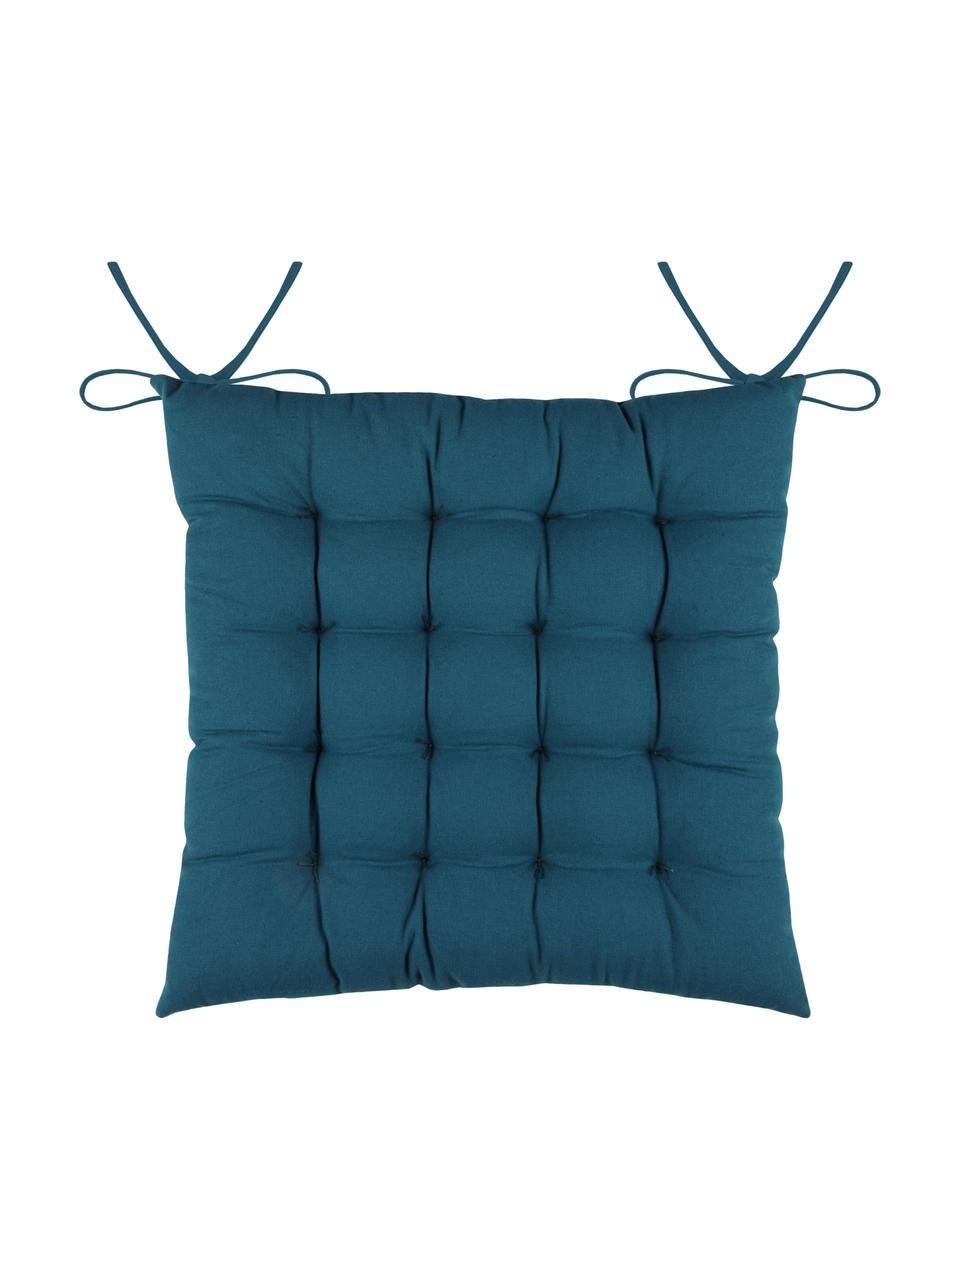 Dwustronna poduszka siedziska na krzesło Galette, 100% bawełna, Niebieski, biały, S 40 x D 40 cm